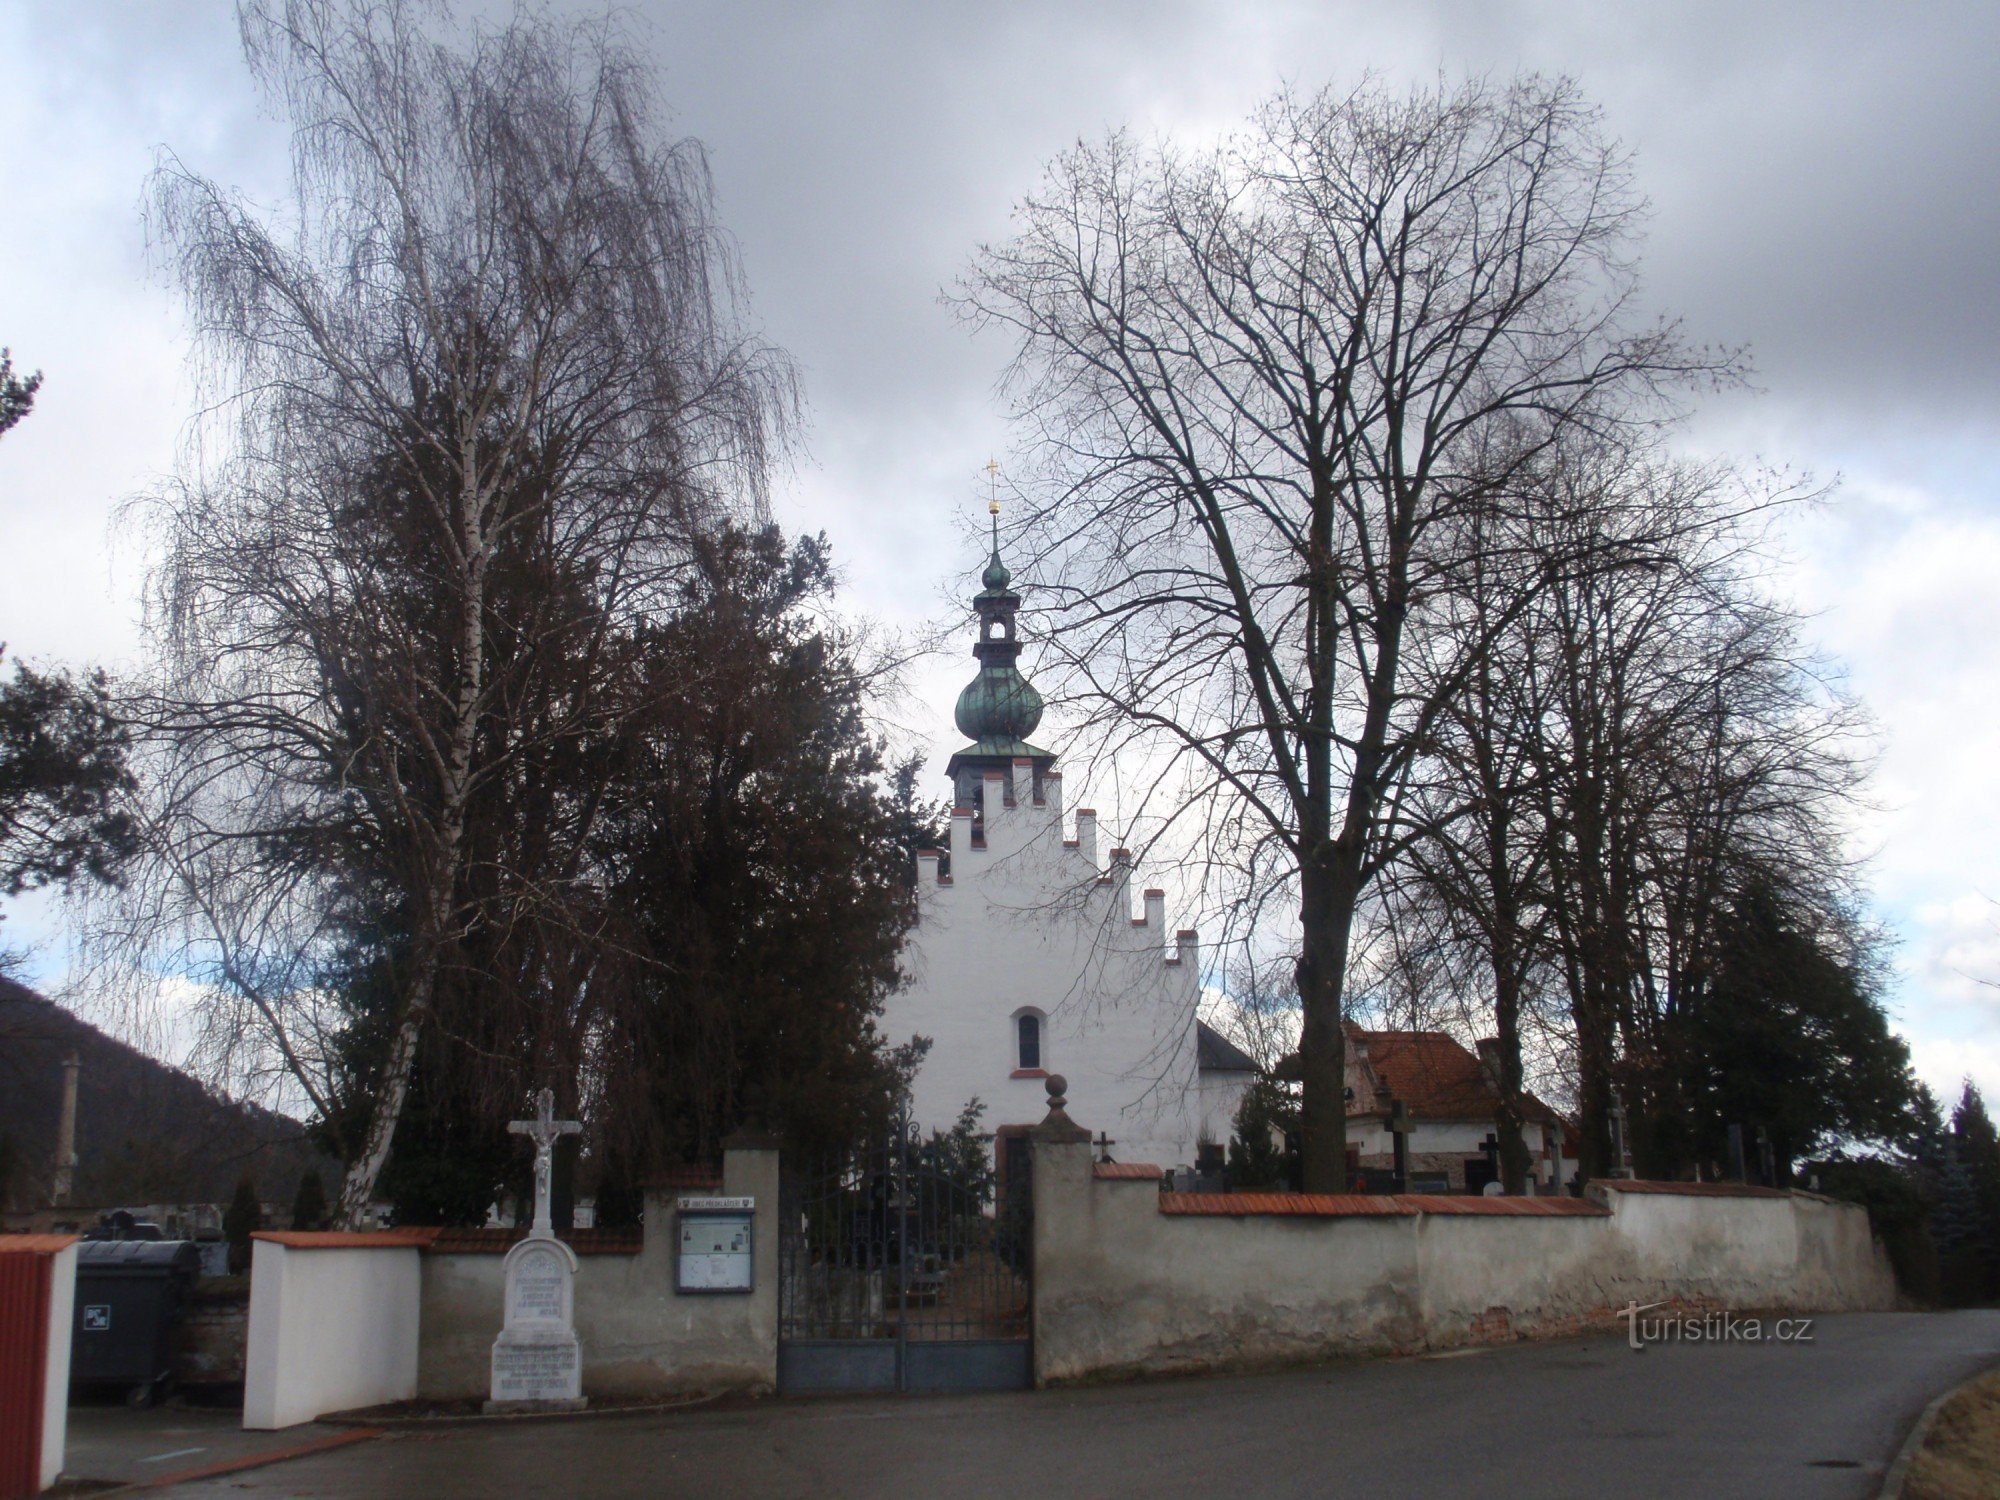 Pre-kloster nær Tišnov - små monumenter